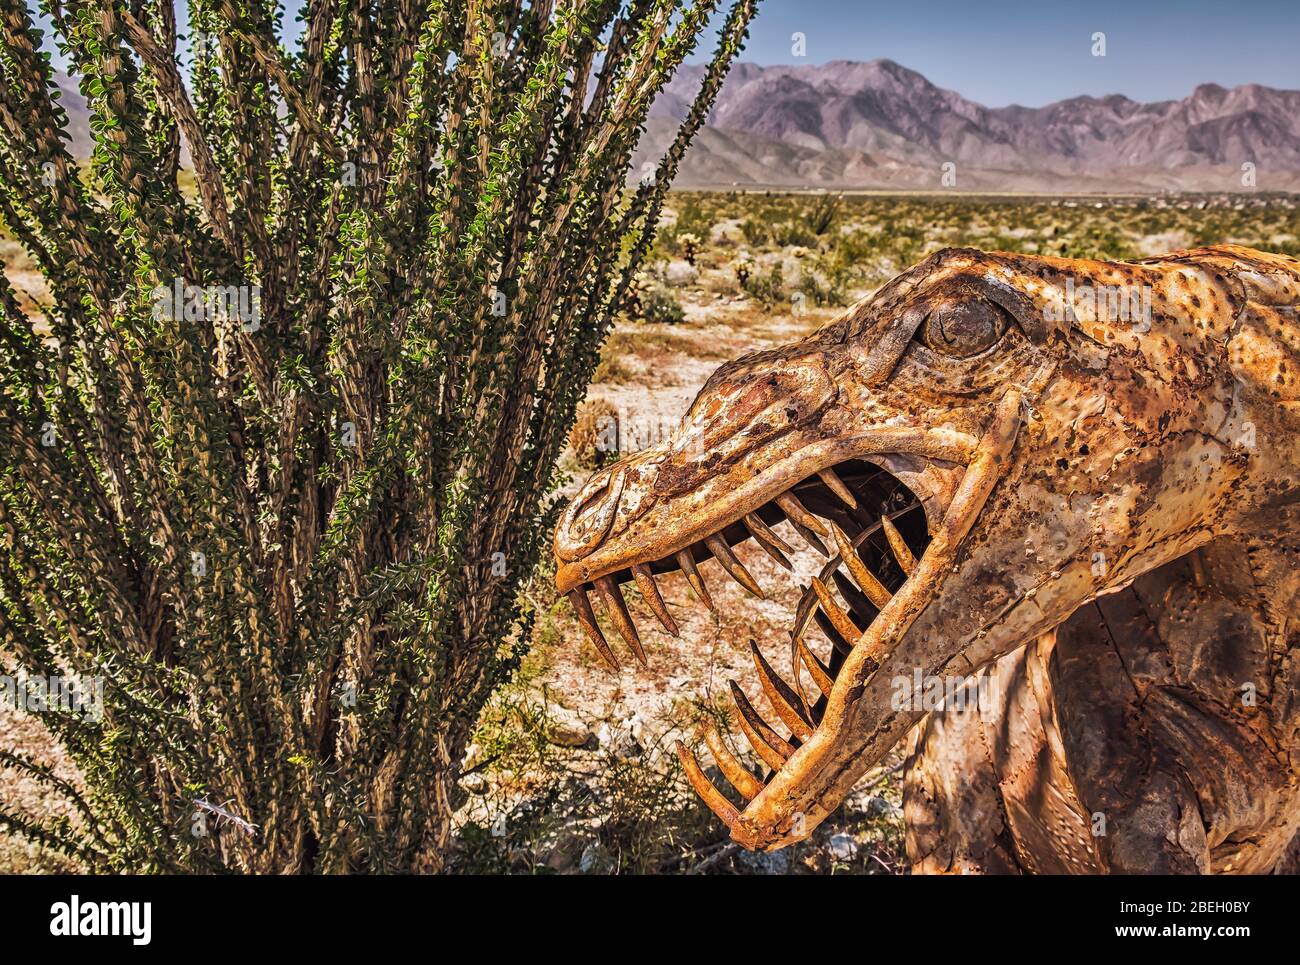 California, USA, marzo 2019, primo piano di una scultura in metallo con testa di dinosauro realizzata dall'artista Ricardo Breceda nell'Anza-Borrego Desert state Park Foto Stock